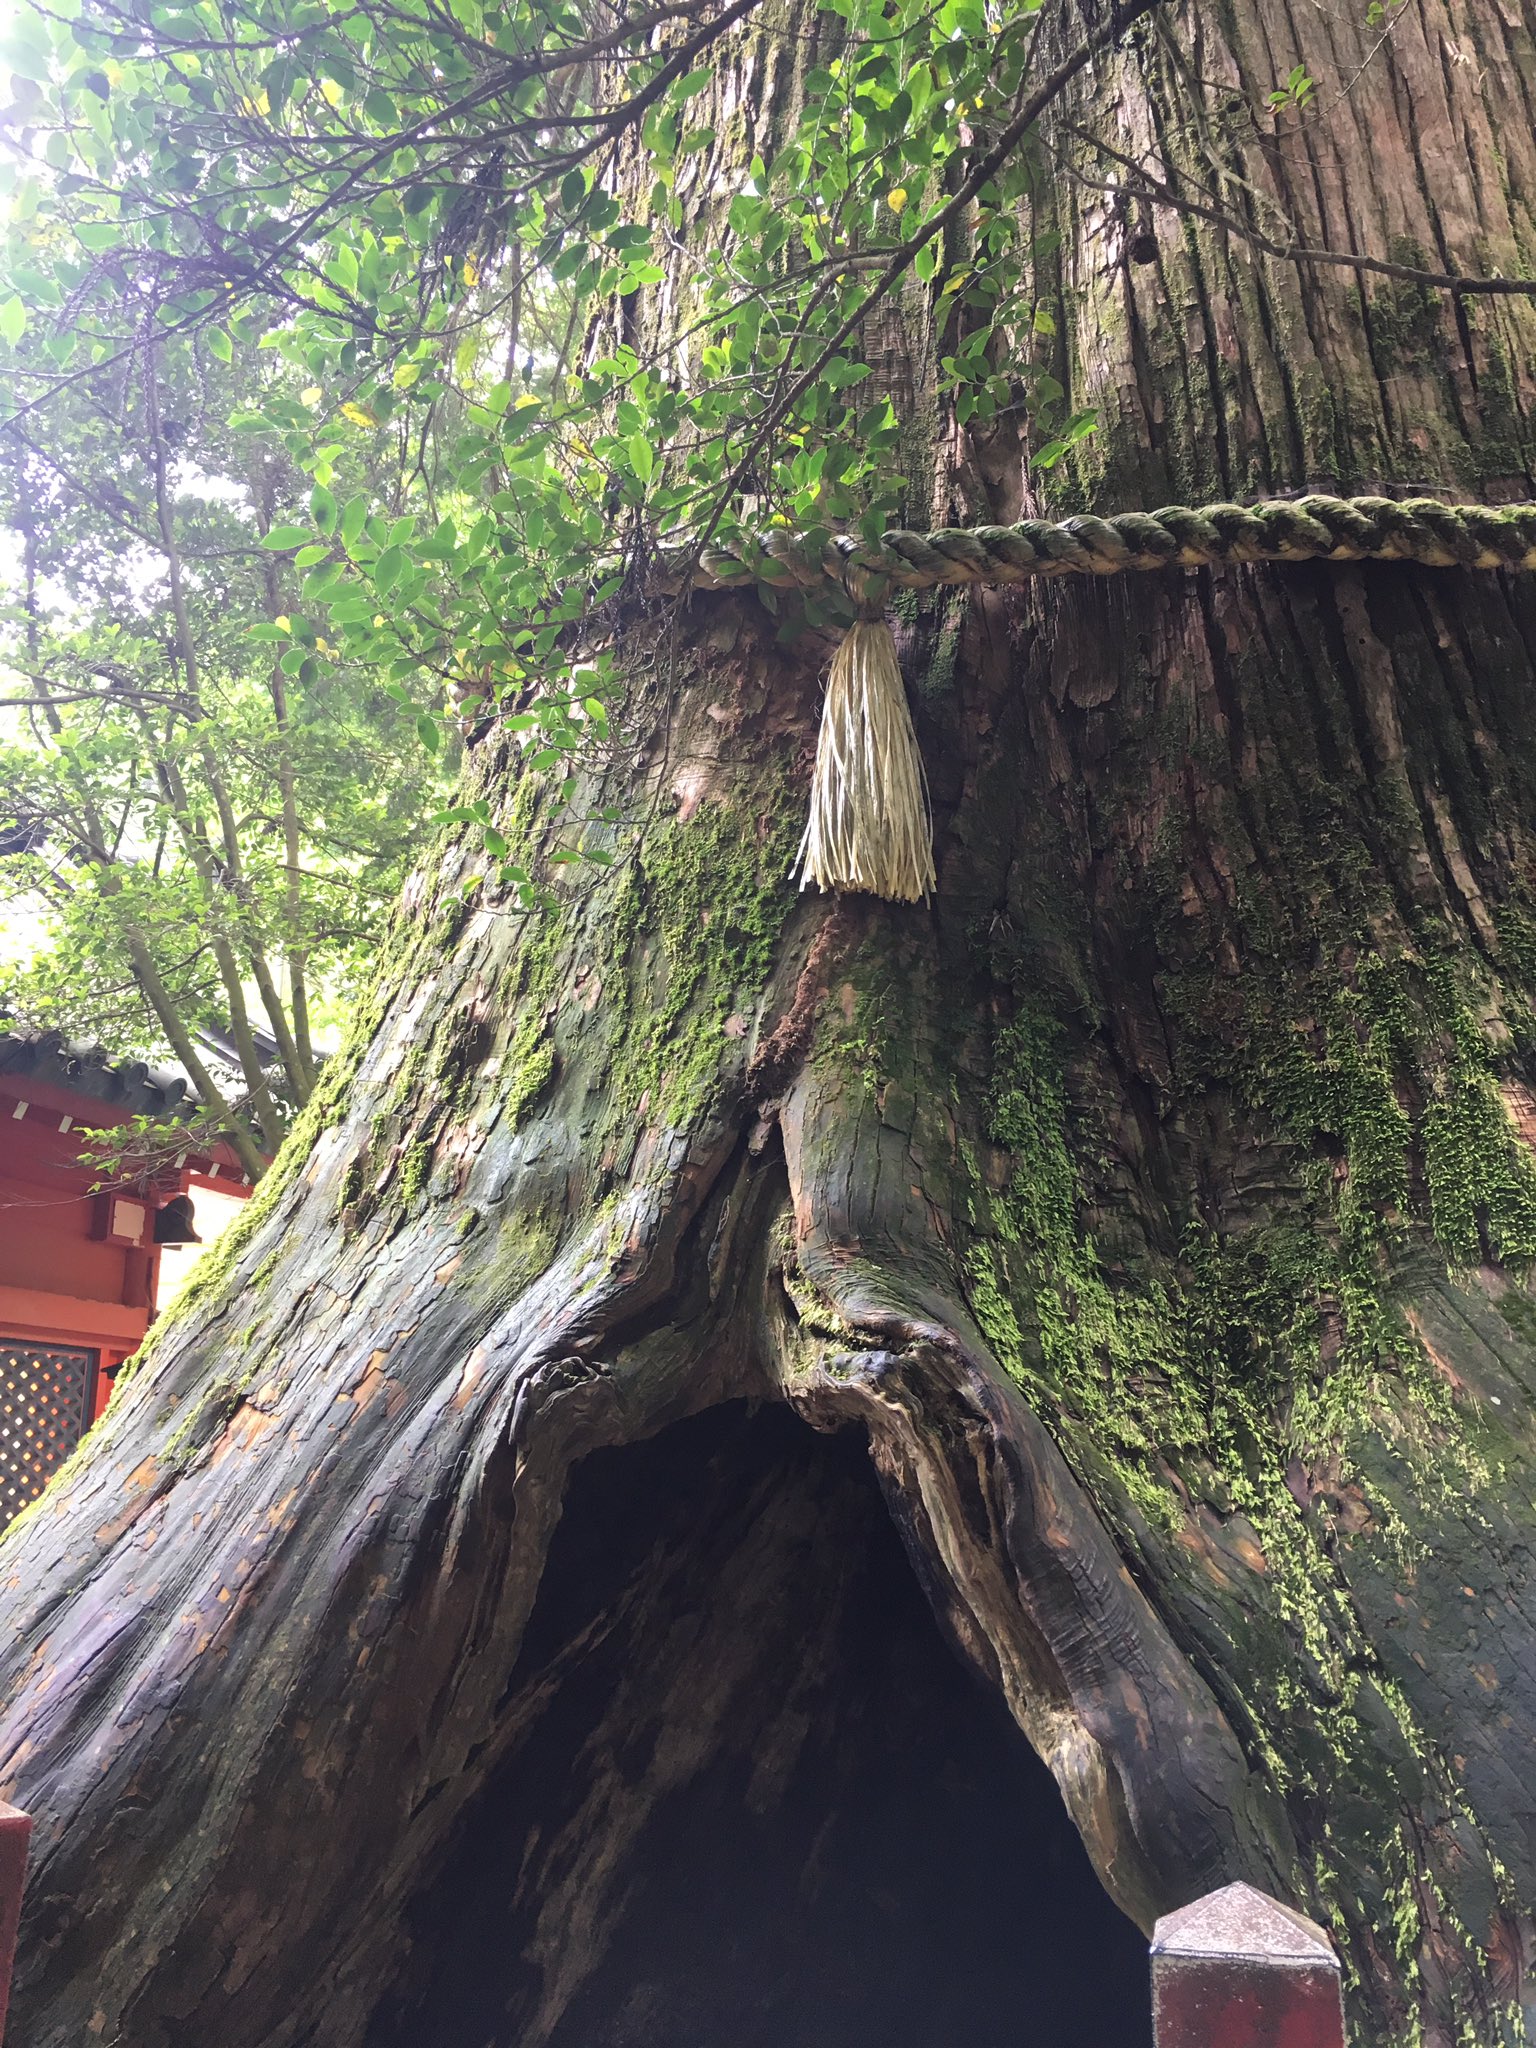 りさこ 今周期私は妊娠する 箱根神社の安産杉を拝みにいきました 皆さんの願い 子宝安産が叶いますように T Co Xi2t5uiwvh Twitter